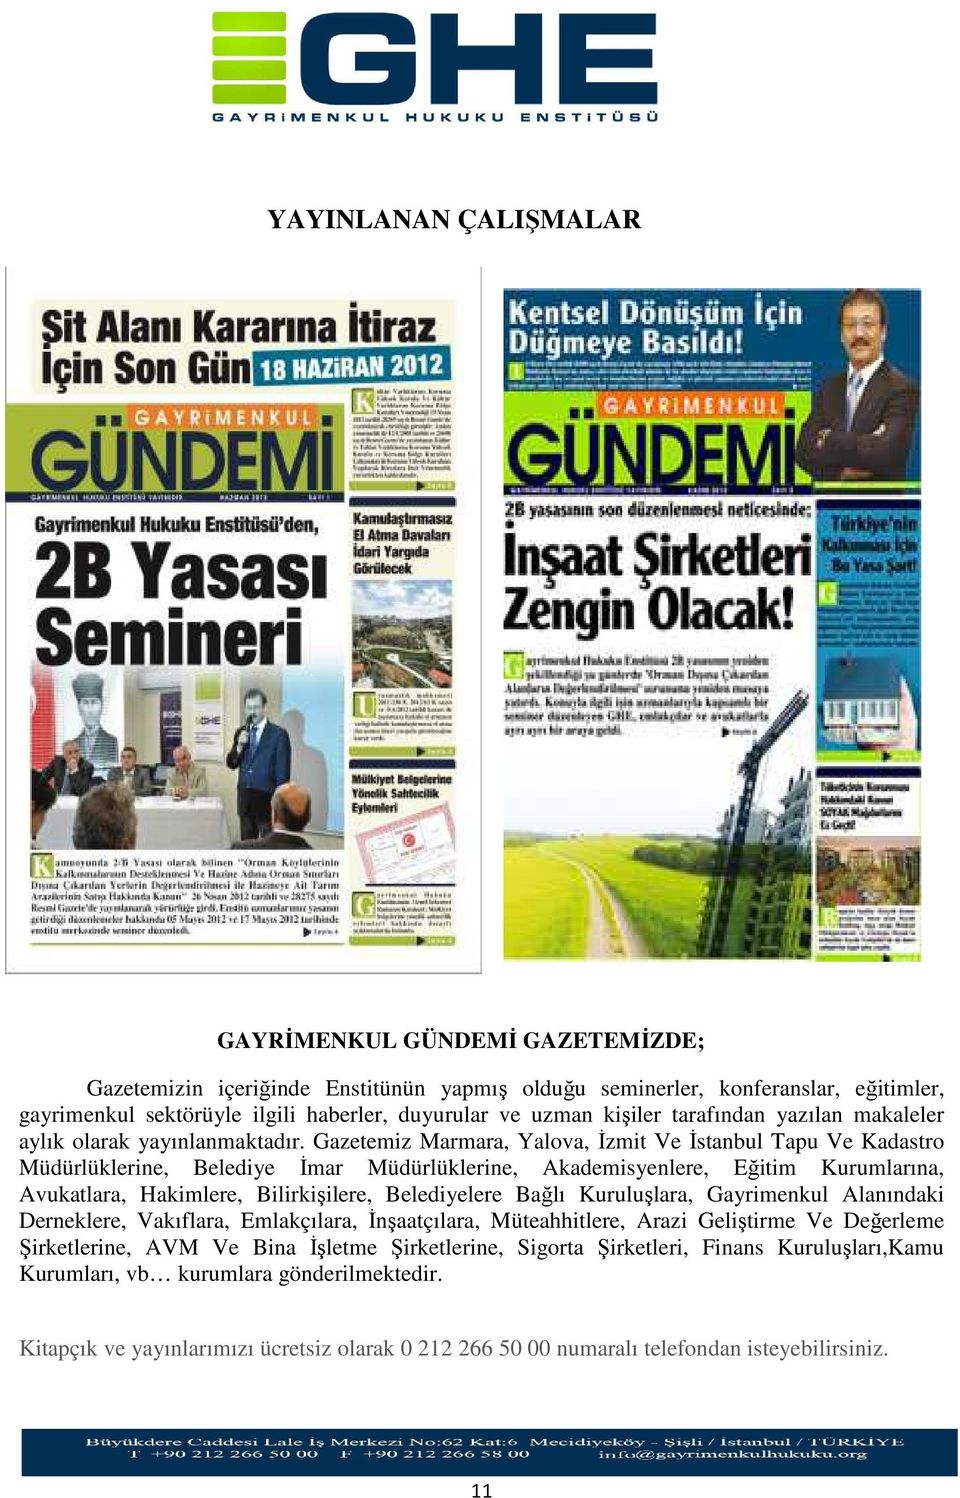 Gazetemiz Marmara, Yalova, İzmit Ve İstanbul Tapu Ve Kadastro Müdürlüklerine, Belediye İmar Müdürlüklerine, Akademisyenlere, Eğitim Kurumlarına, Avukatlara, Hakimlere, Bilirkişilere, Belediyelere